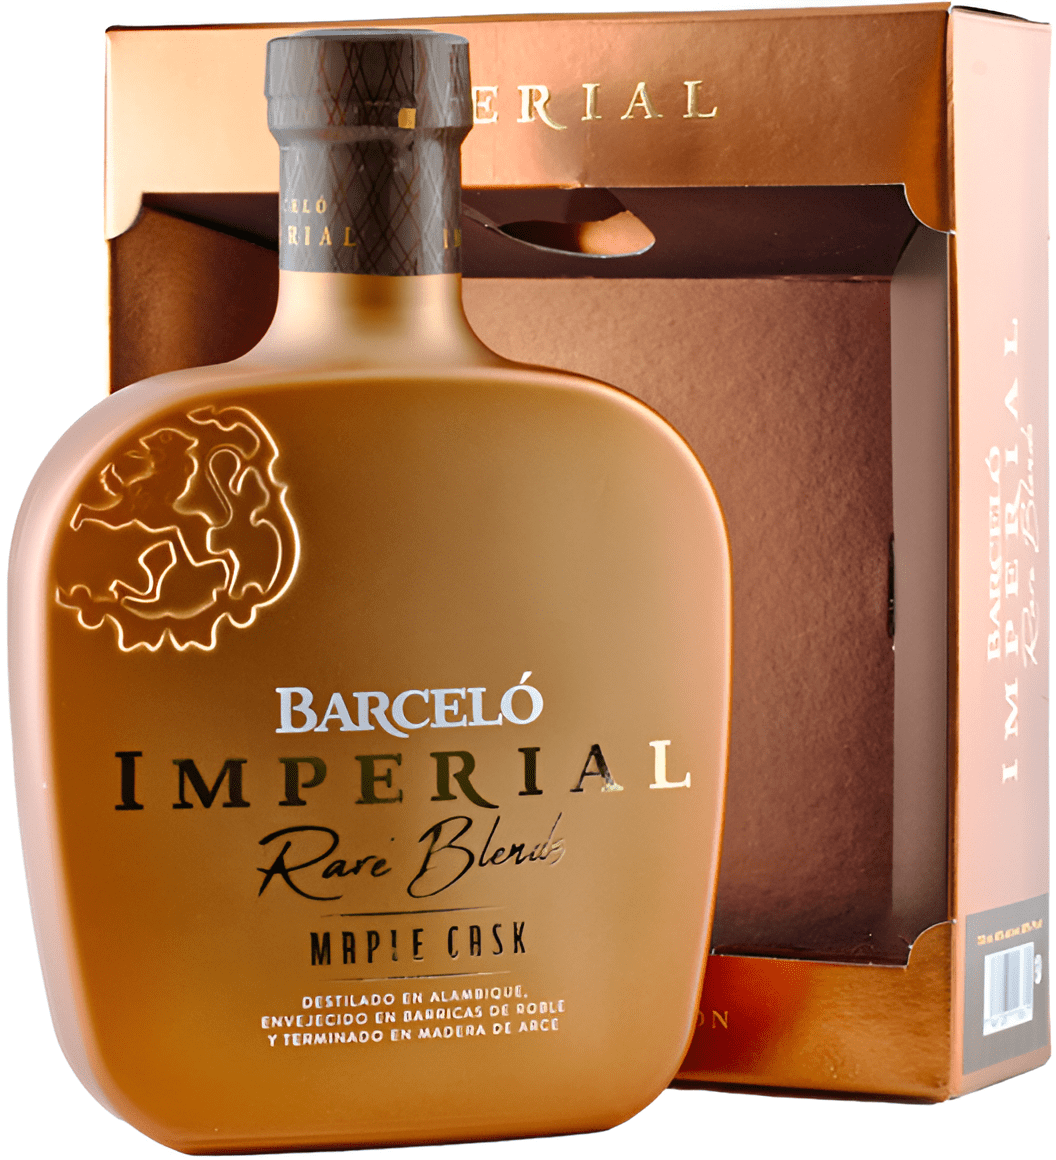 Barceló Imperial Rare Blends Maple Cask 40% 0,7l (darčekové balenie kazeta)